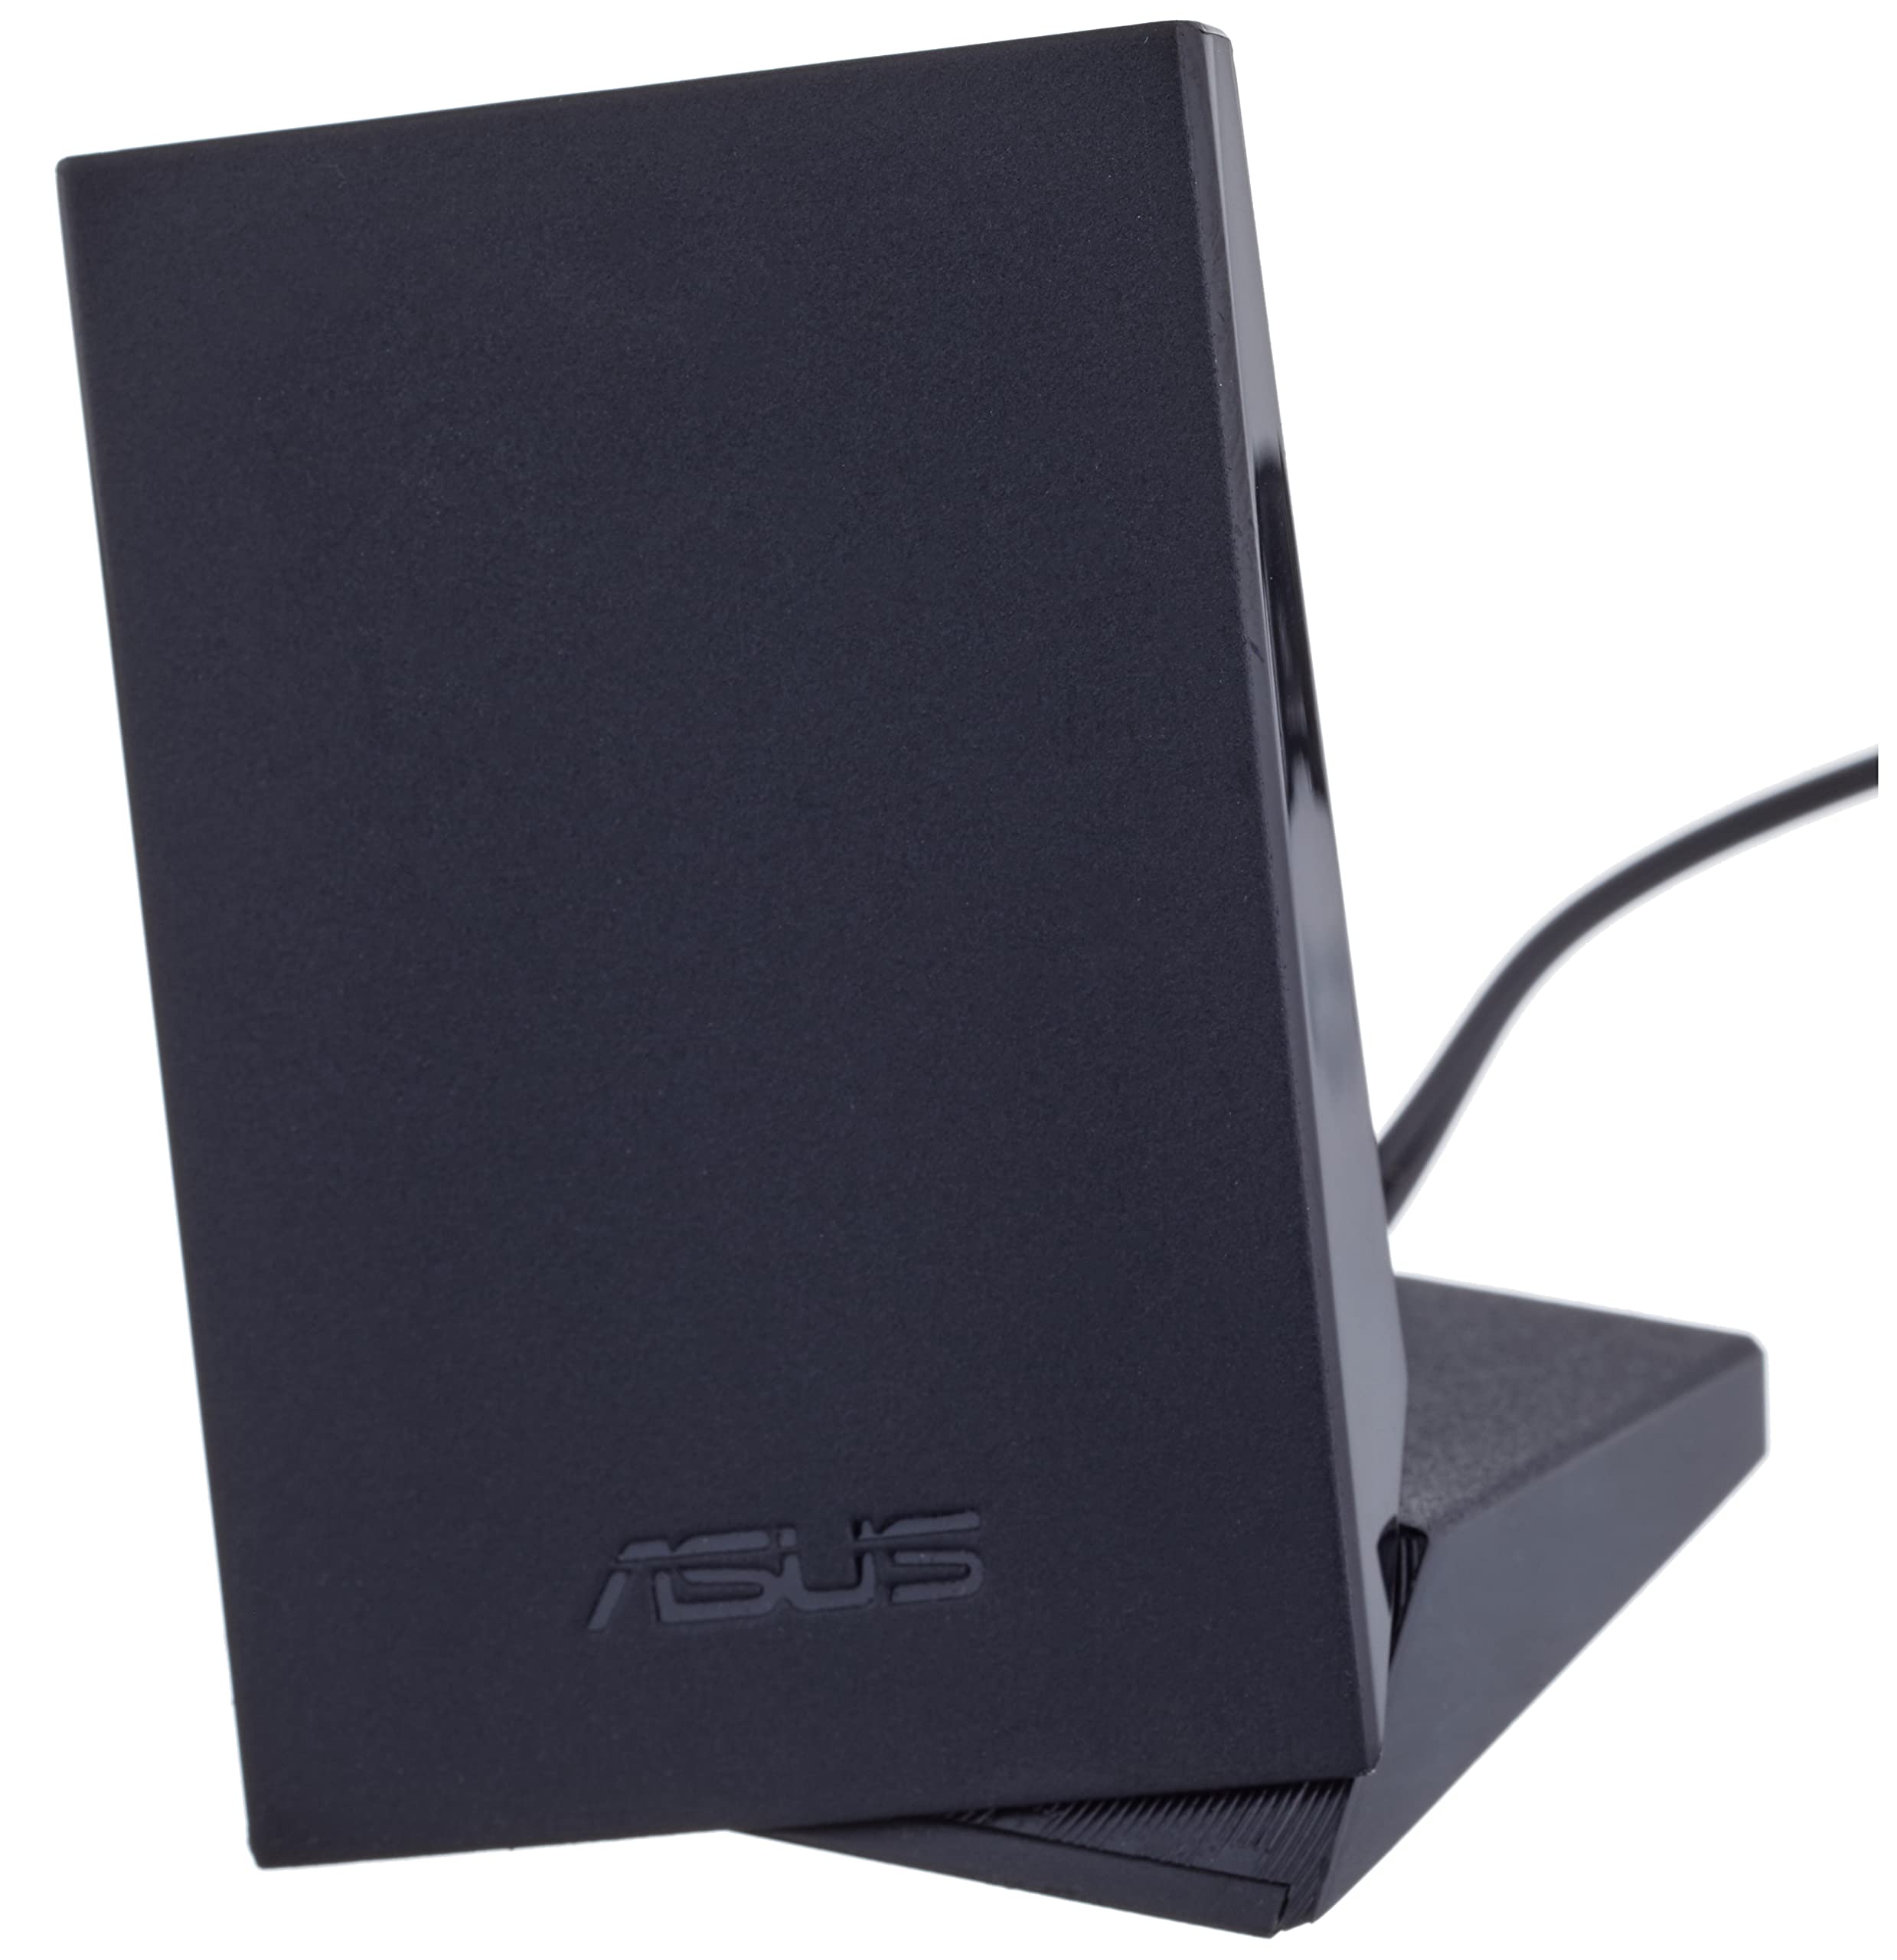 ASUS S501MD Desktop PC, Intel Core i7-12700, 16GB DDR4 RAM, 512GB PCIe SSD, Wi-Fi 6, Windows 11 Home, Black,  S501MD-DB704